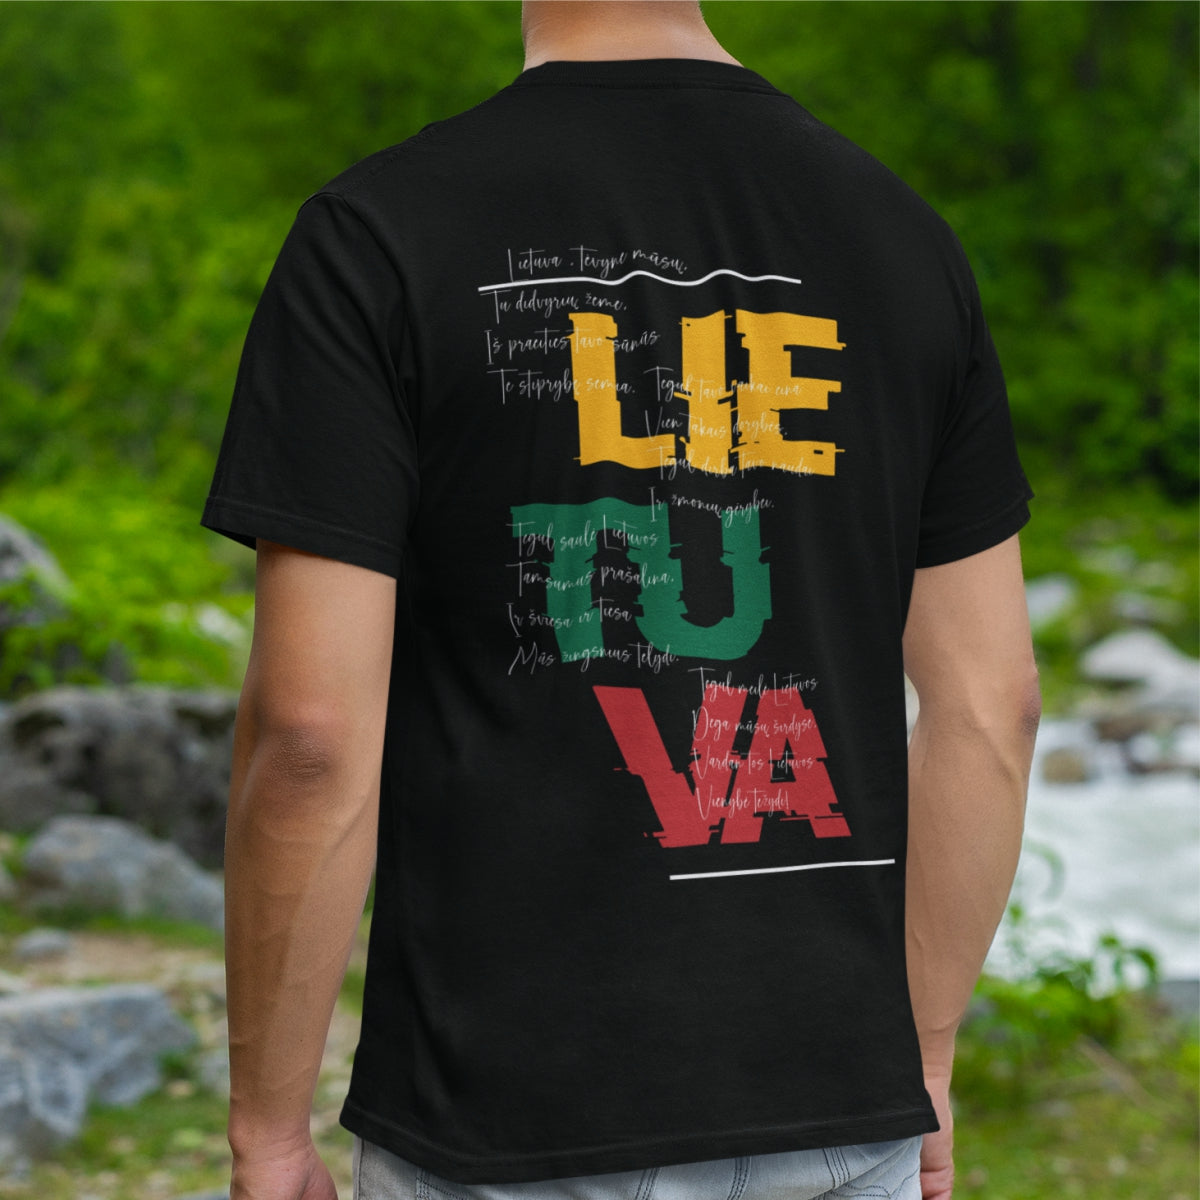 Juodi UNISEX marškinėliai su spauda ant nugaros  "Lietuva, tėvyne mūsų“